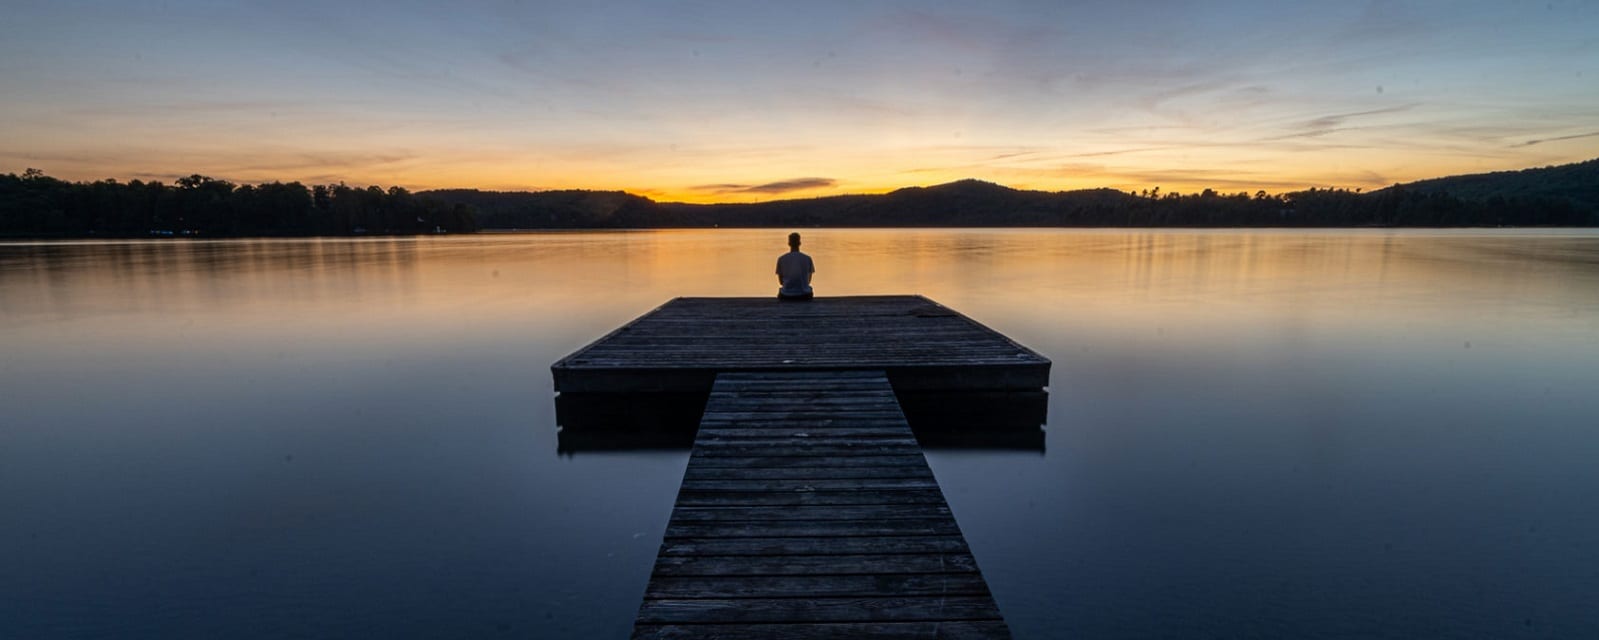 a man sit near the lake